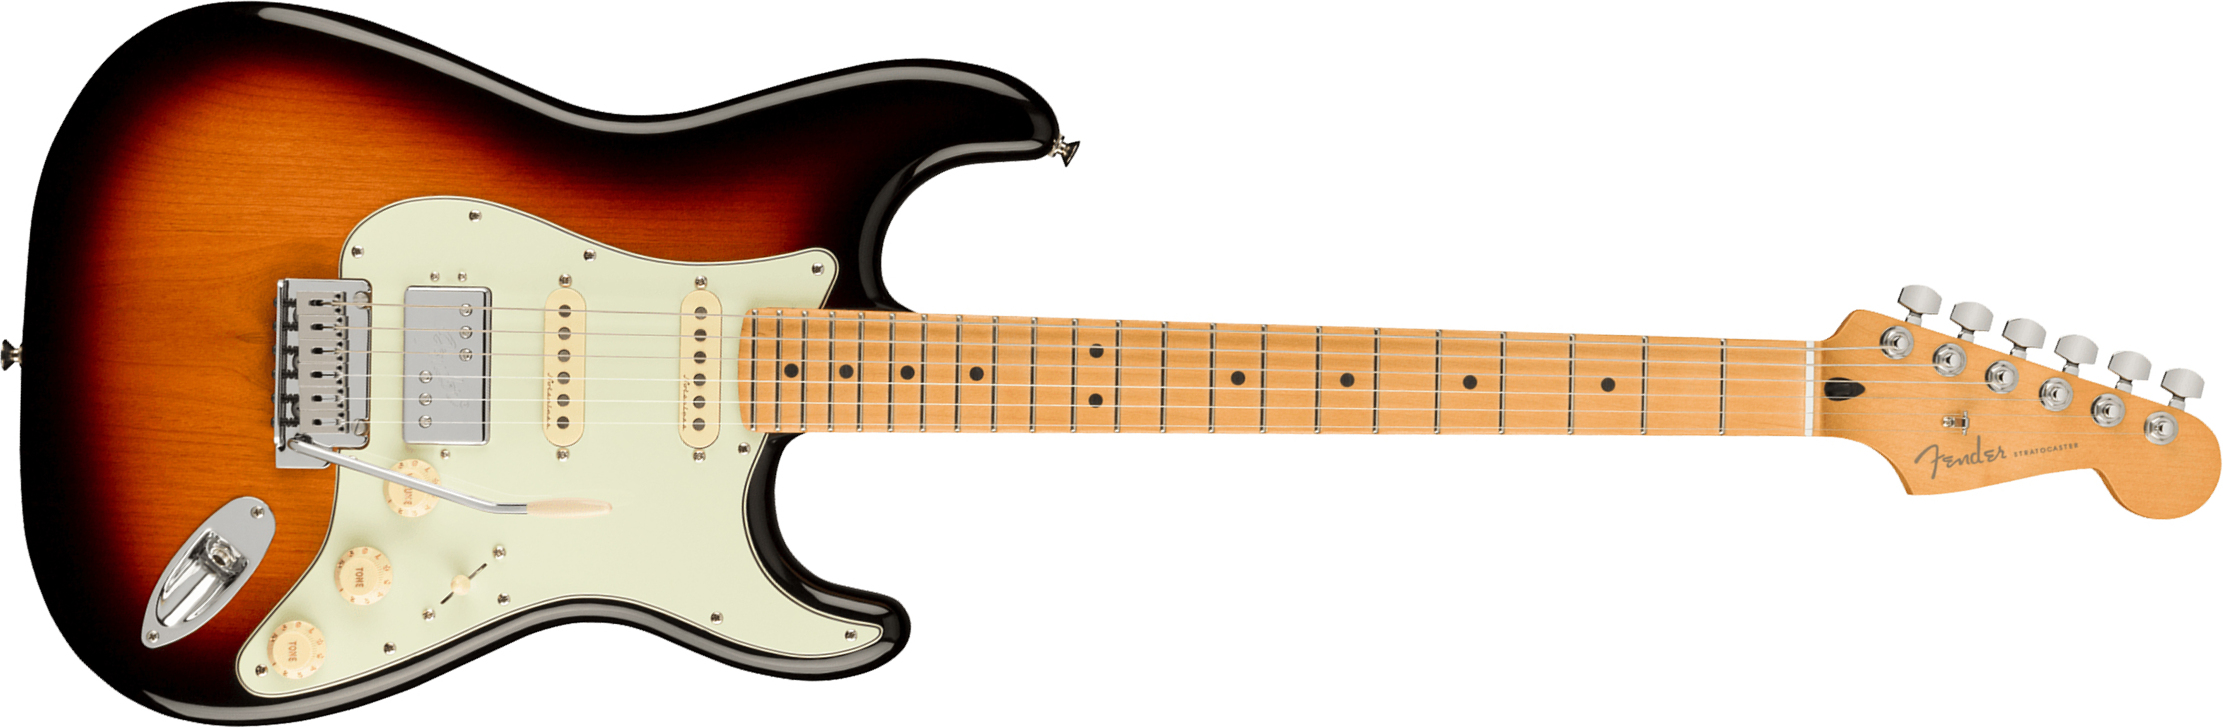 Fender Strat Player Plus Mex Hss Trem Mn - 3-color Sunburst - Guitarra eléctrica con forma de str. - Main picture